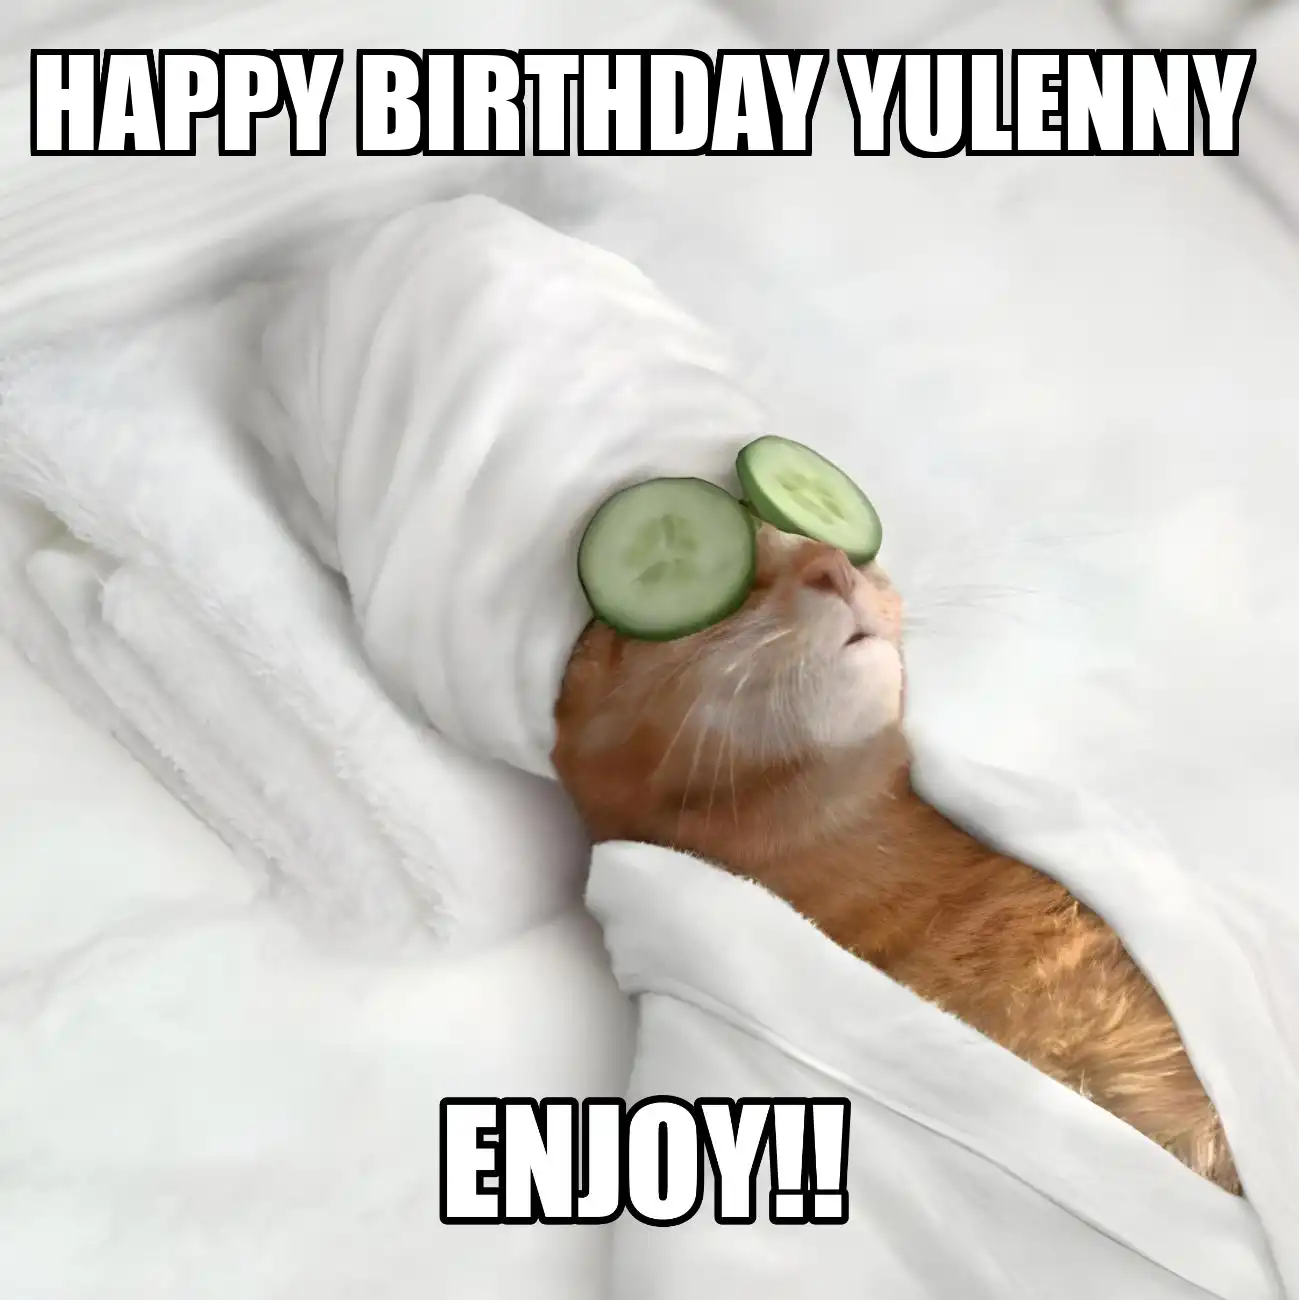 Happy Birthday Yulenny Enjoy Cat Meme